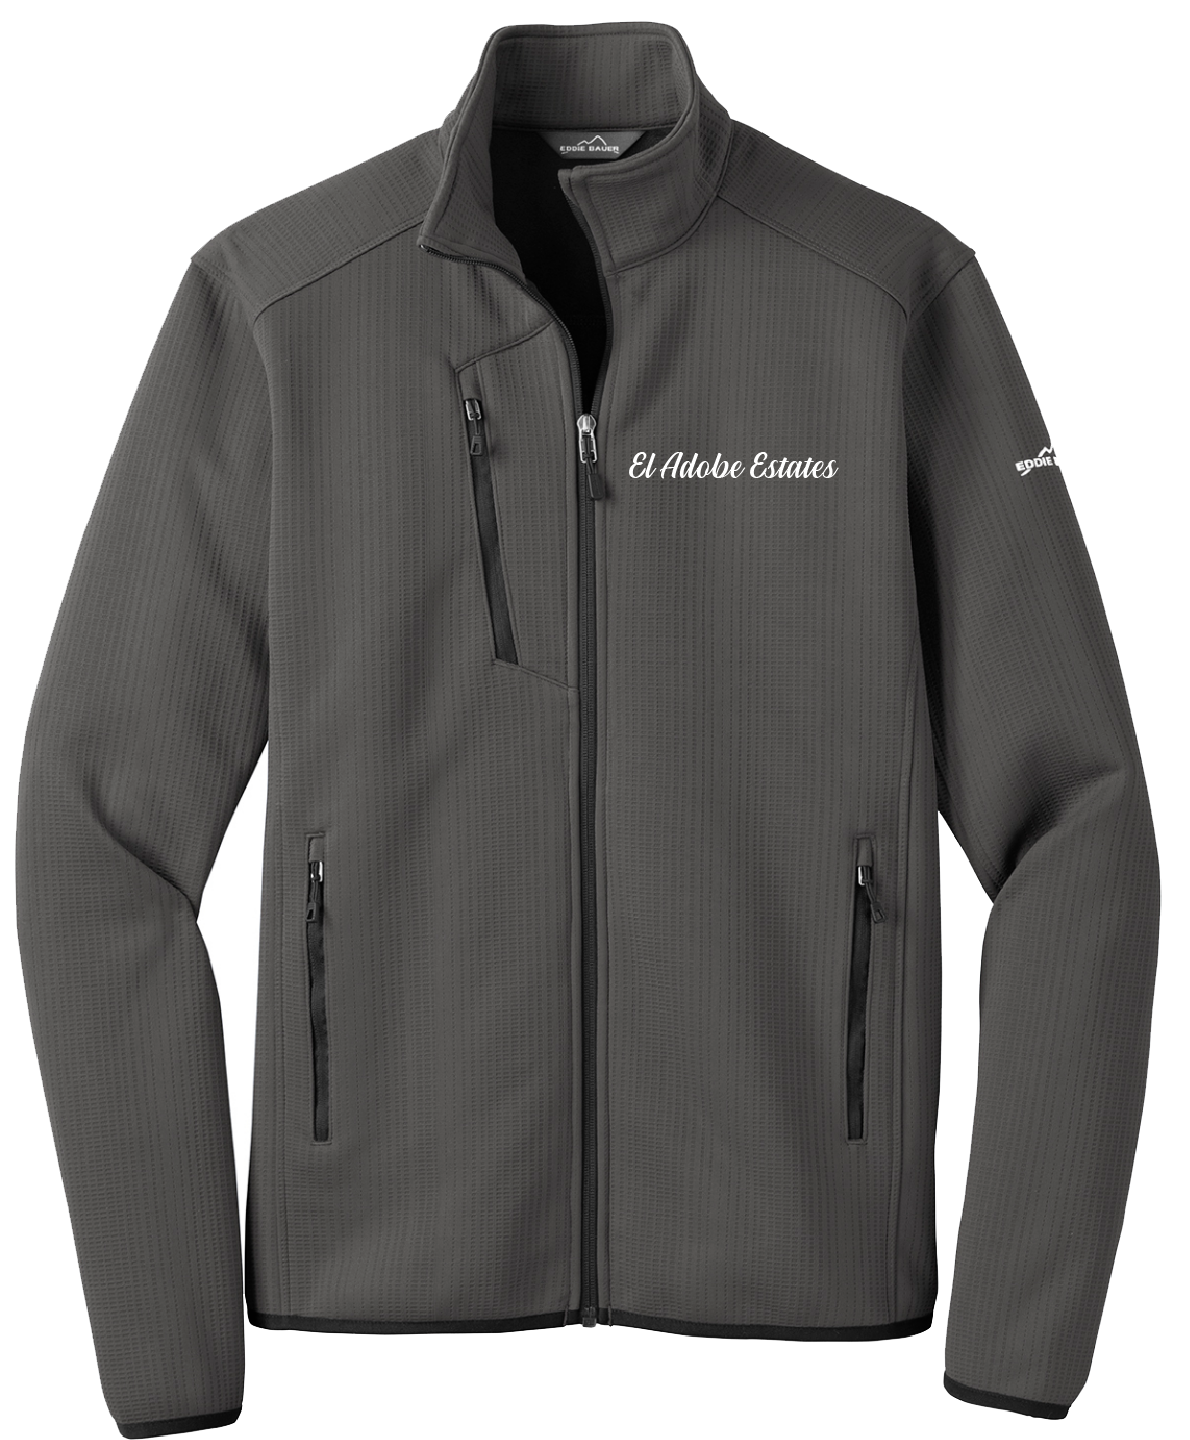 El Adobe Estates - Mens - Eddie Bauer ® Dash Full-Zip Fleece Jacket